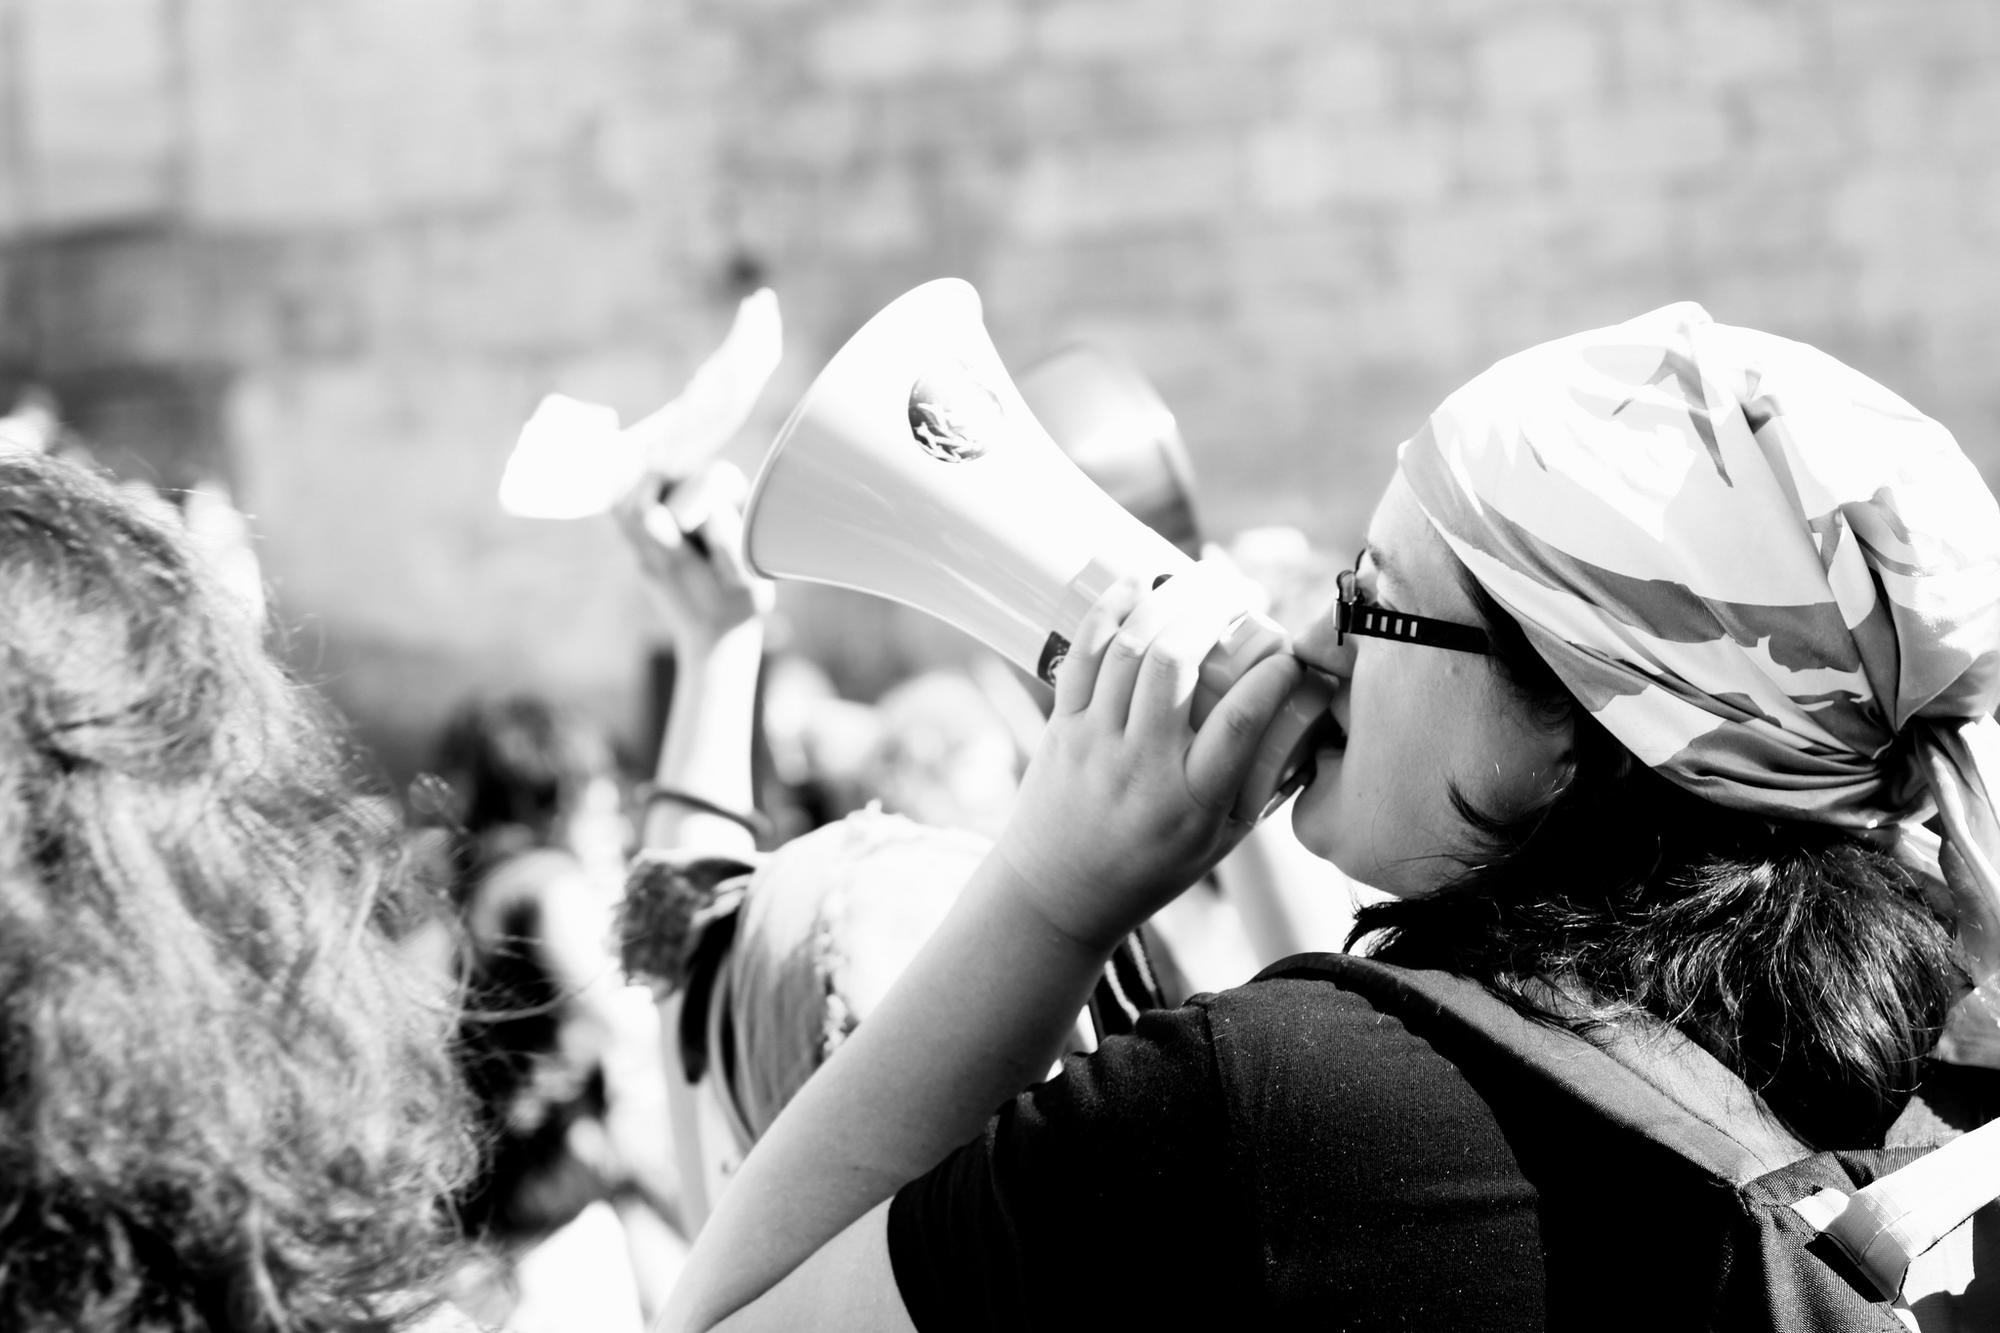 Mujeres gallegas defendiendo sus derechos